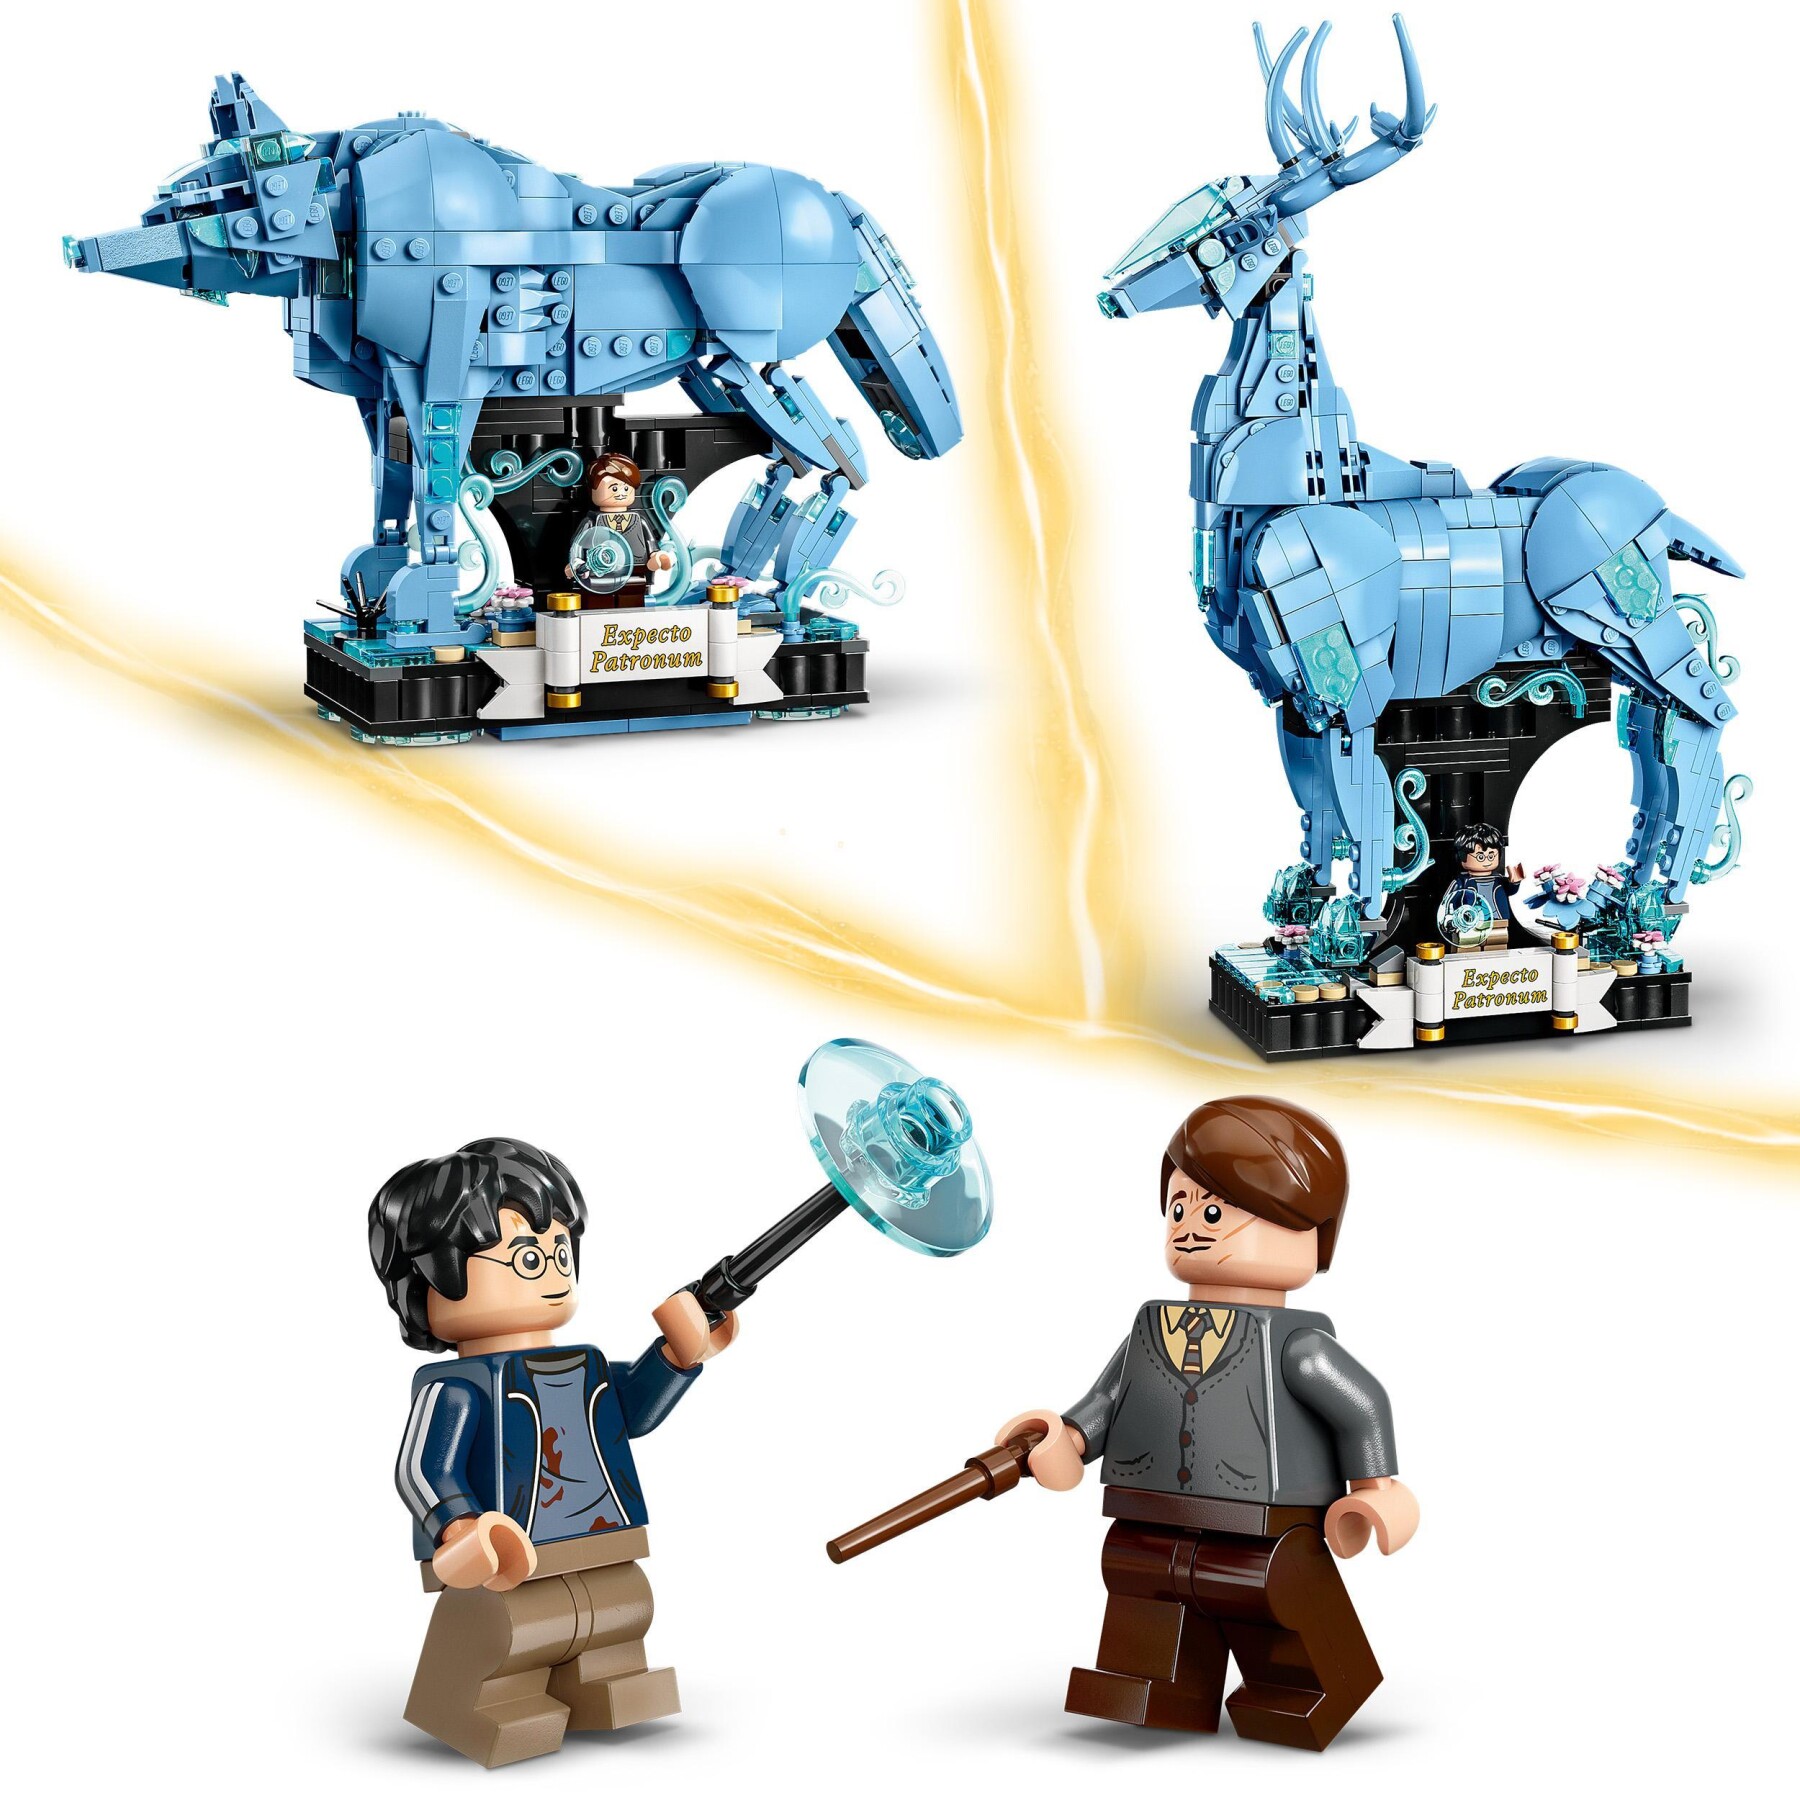 Lego harry potter 76414 expecto patronum set 2 in 1 con figure animali, cervo e lupo, regali per adolescenti, donne e uomini - Harry Potter, LEGO® Harry Potter™